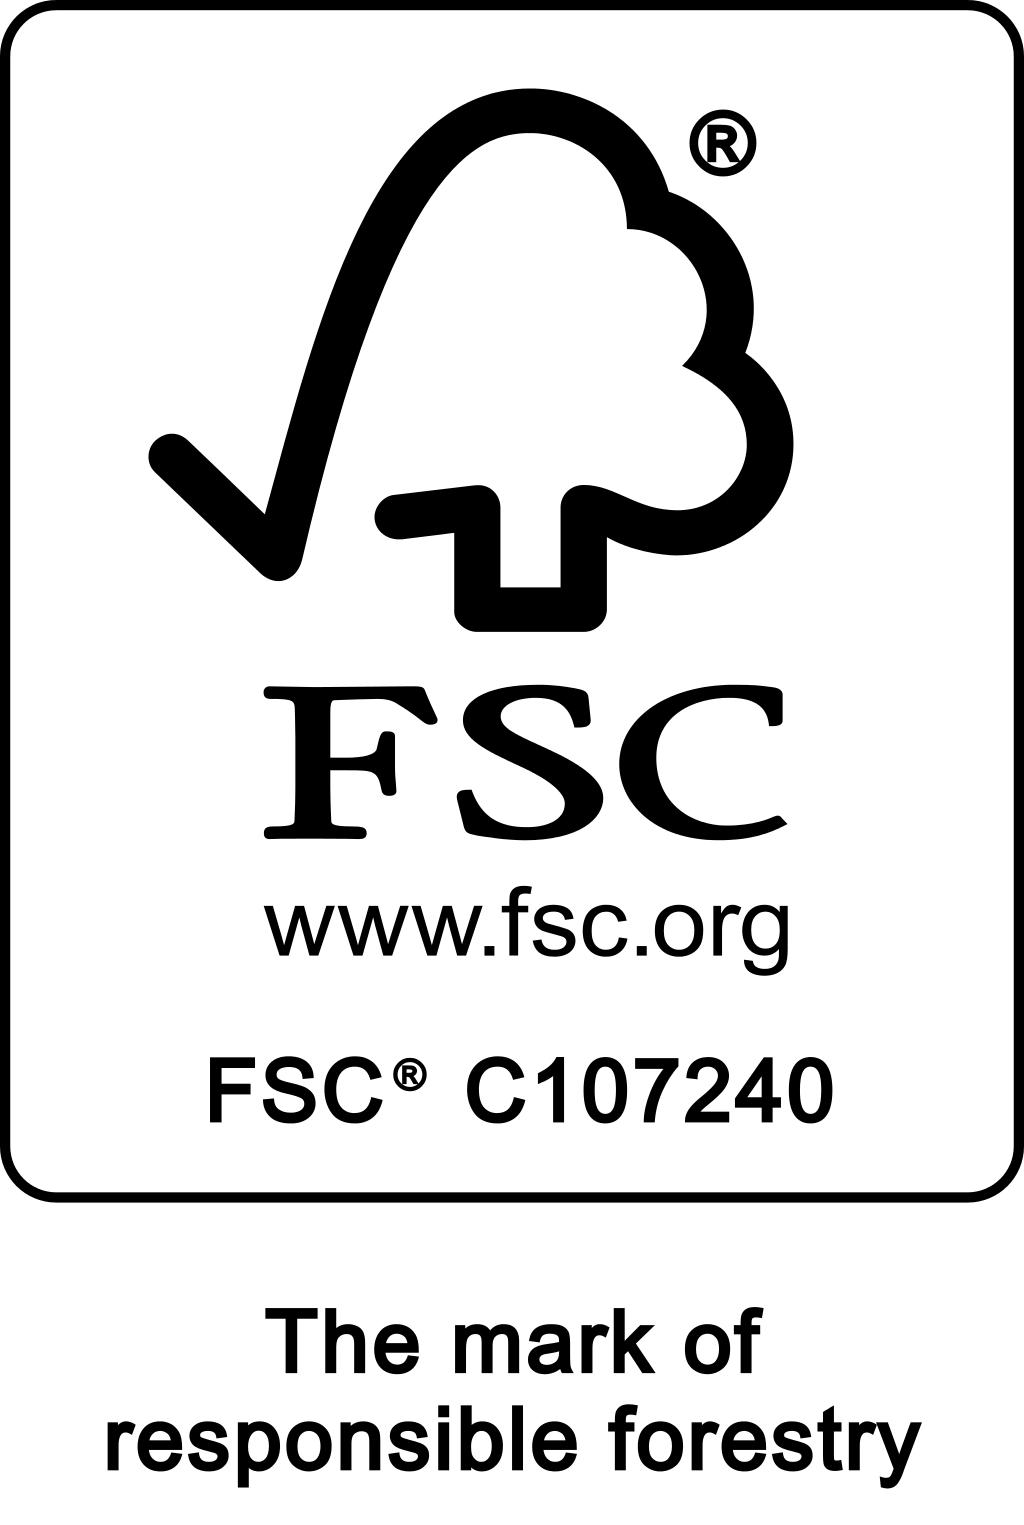 Cherchez les produits Weber certifies FSC®!